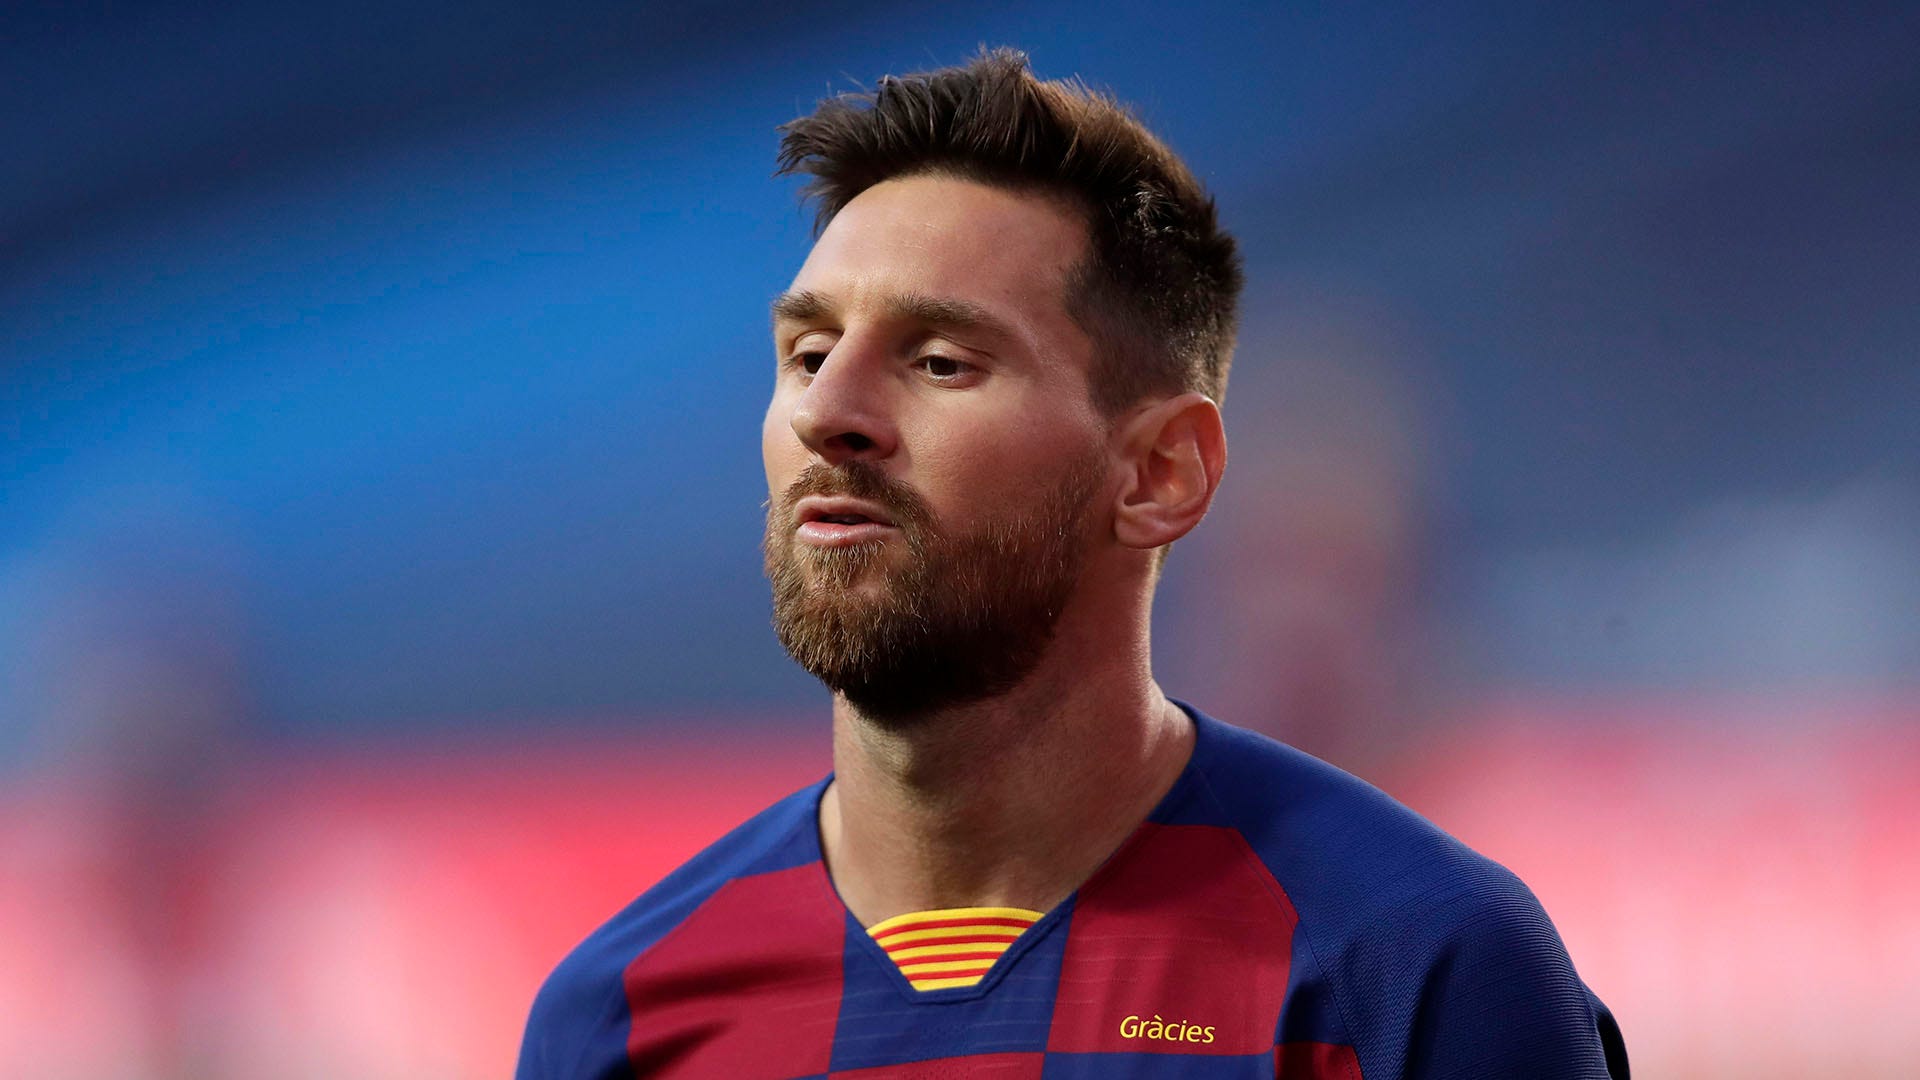 Messi rời đi Barca để gia nhập câu lạc bộ khác - Thế giới bóng đá sẽ chứng kiến một diễn biến mới khi Messi quyết định rời khỏi đội bóng ông đã gắn bó suốt nhiều năm. Hãy đón xem và tìm hiểu về câu lạc bộ mới mà anh ta sẽ gia nhập, liệu anh ta sẽ tiếp tục được thể hiện tài năng tuyệt vời của mình hay không!